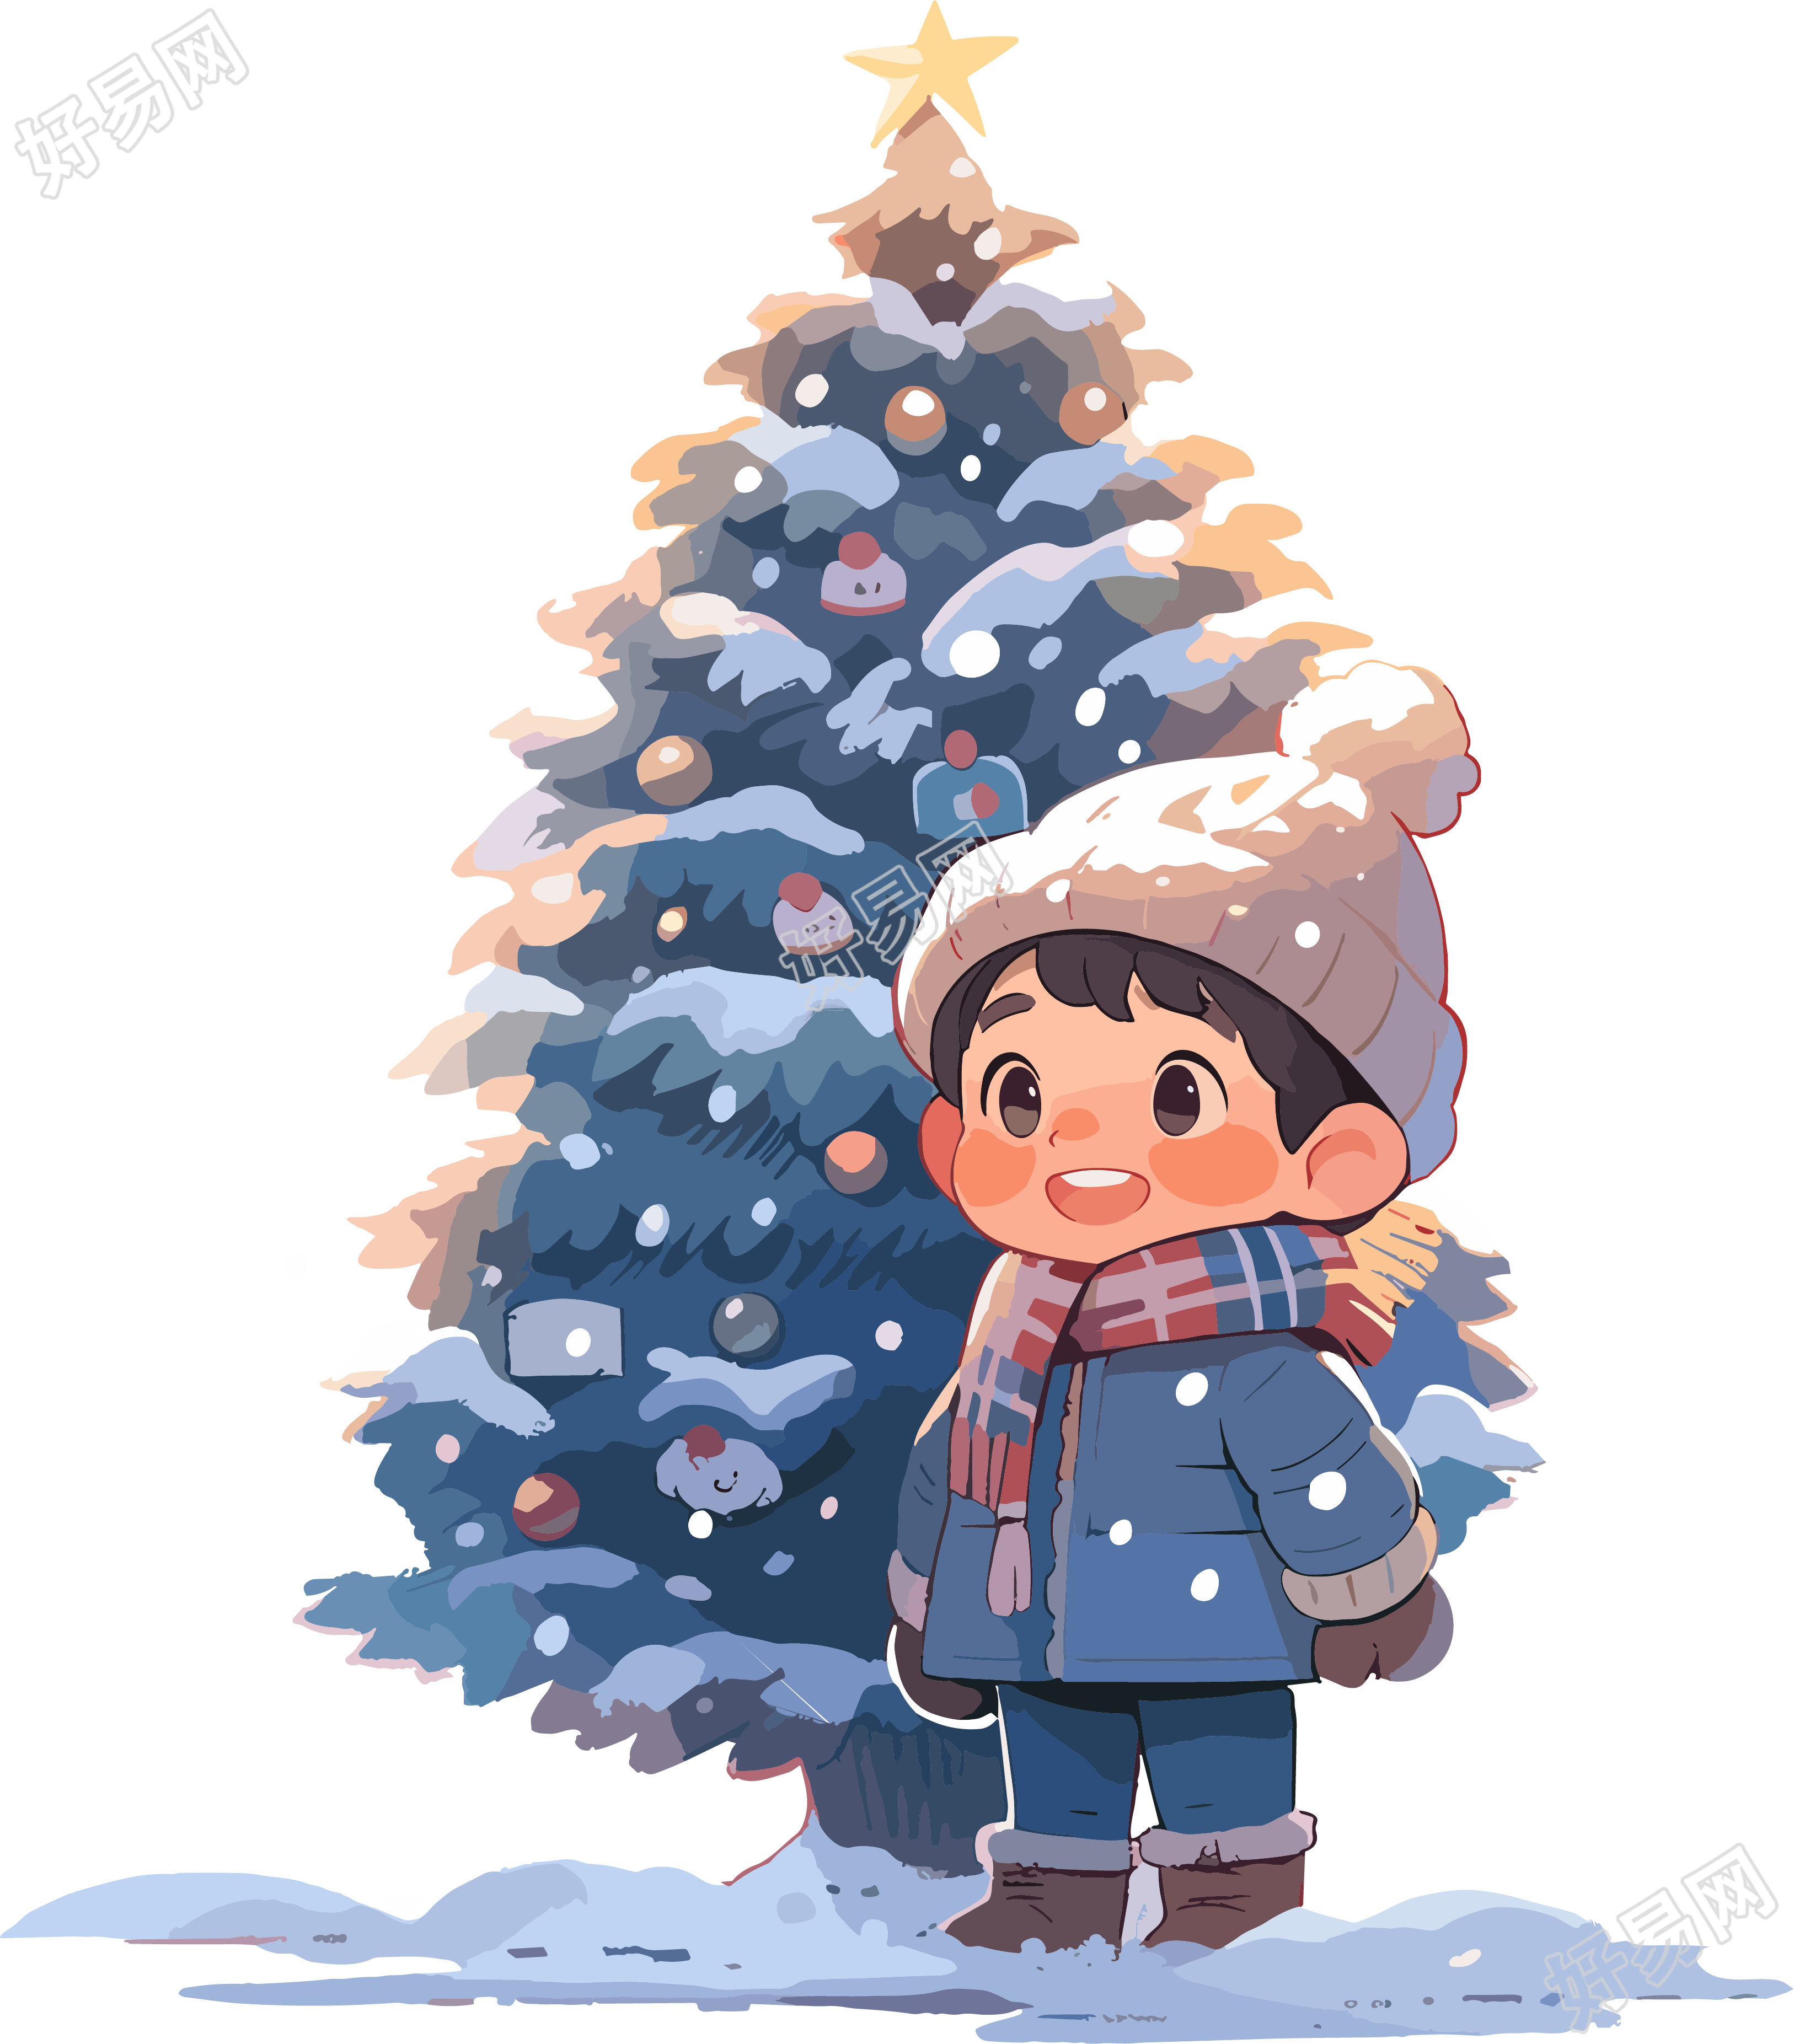 可爱小男孩圣诞树插图